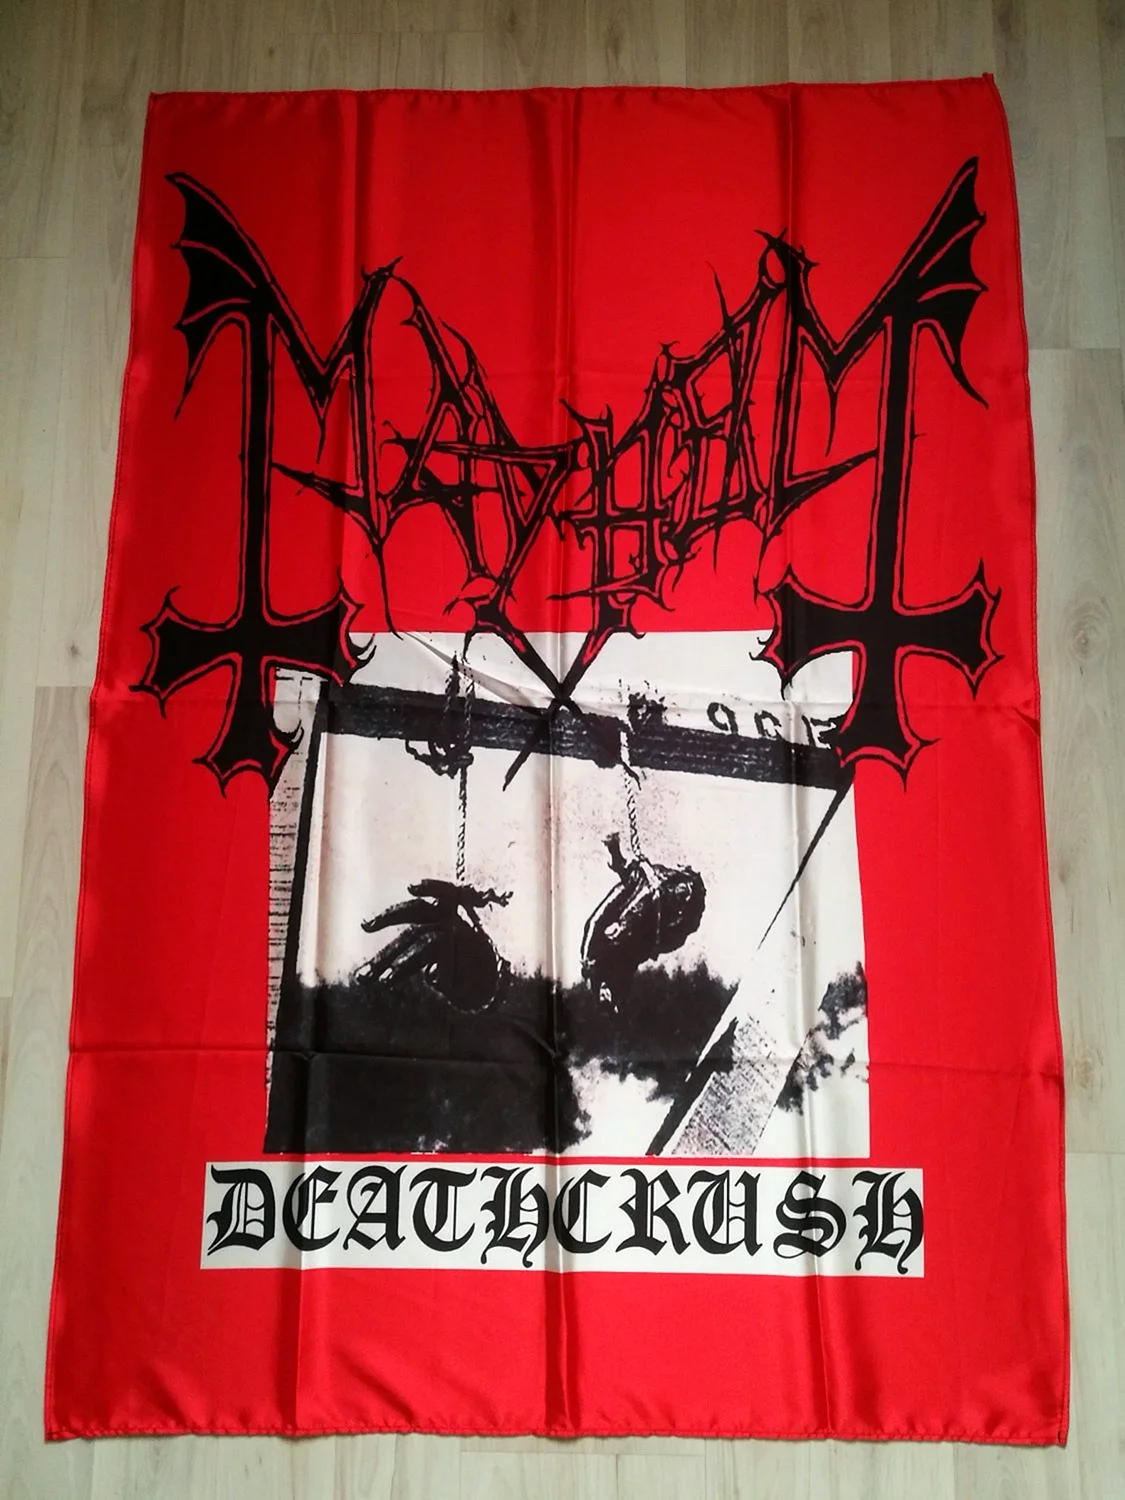 Mayhem Deathcrush poster